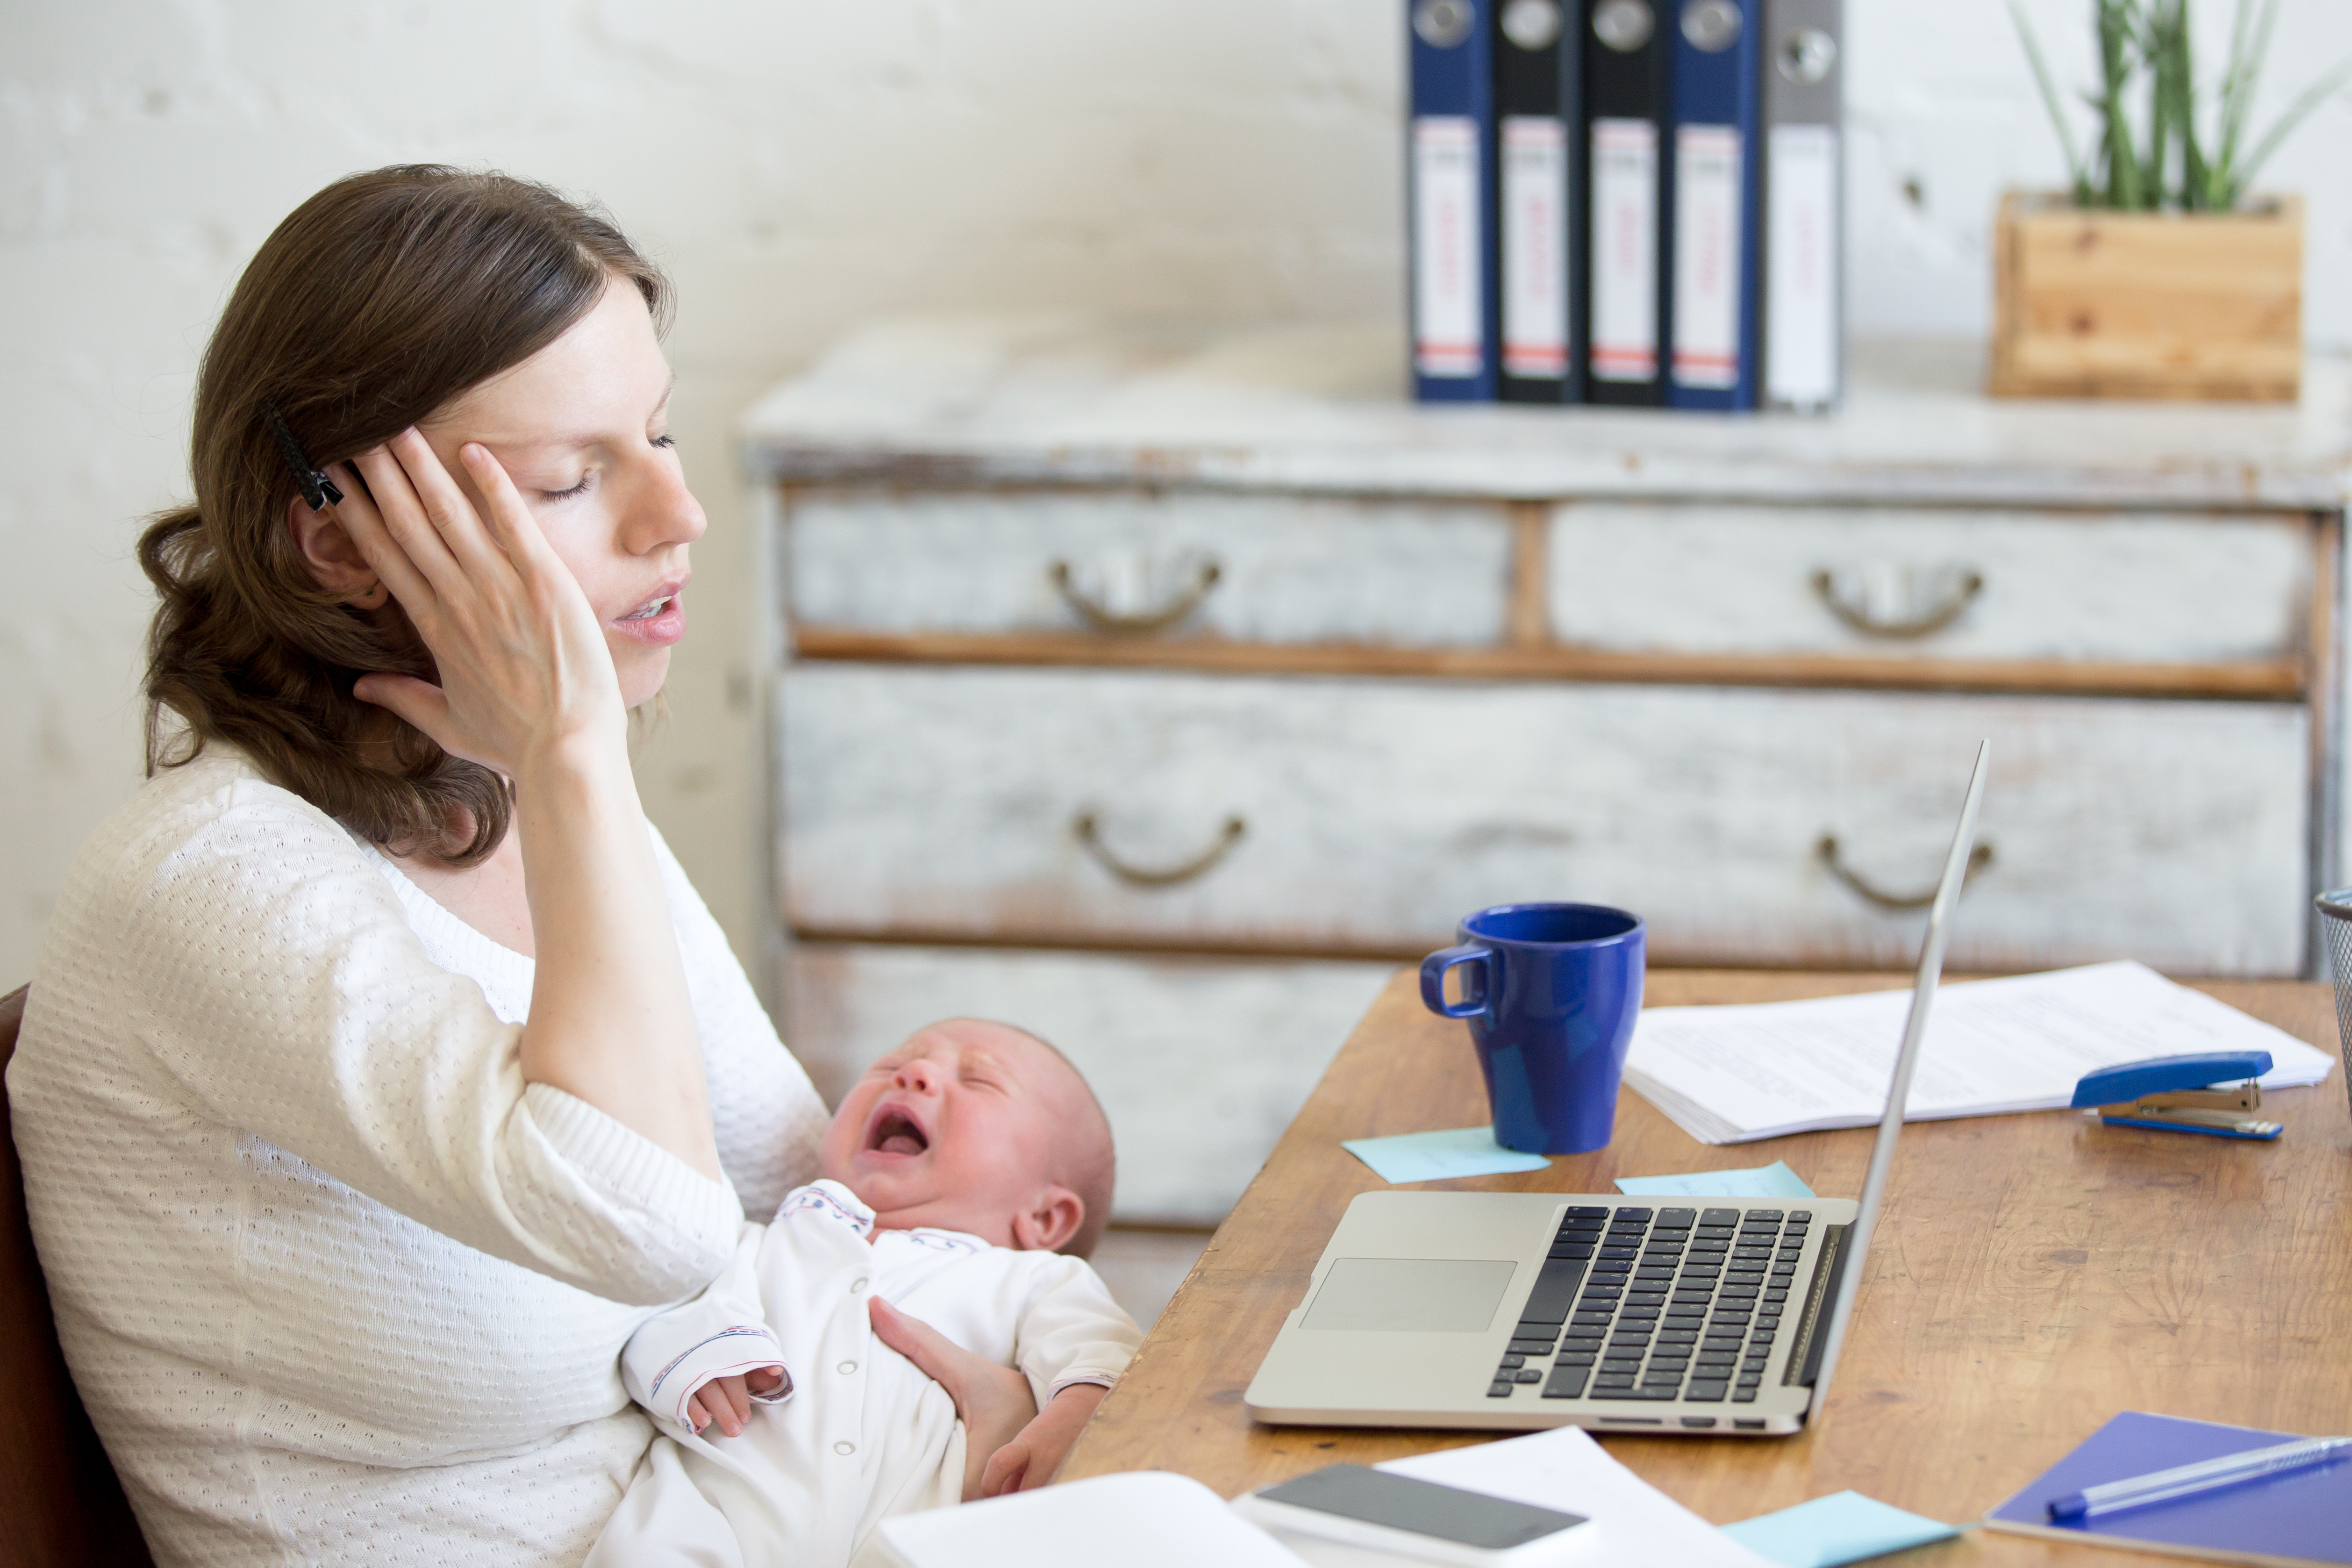 Une femme a l'air stressée alors qu'elle tient un nouveau-né en pleurs | Source : Shutterstock